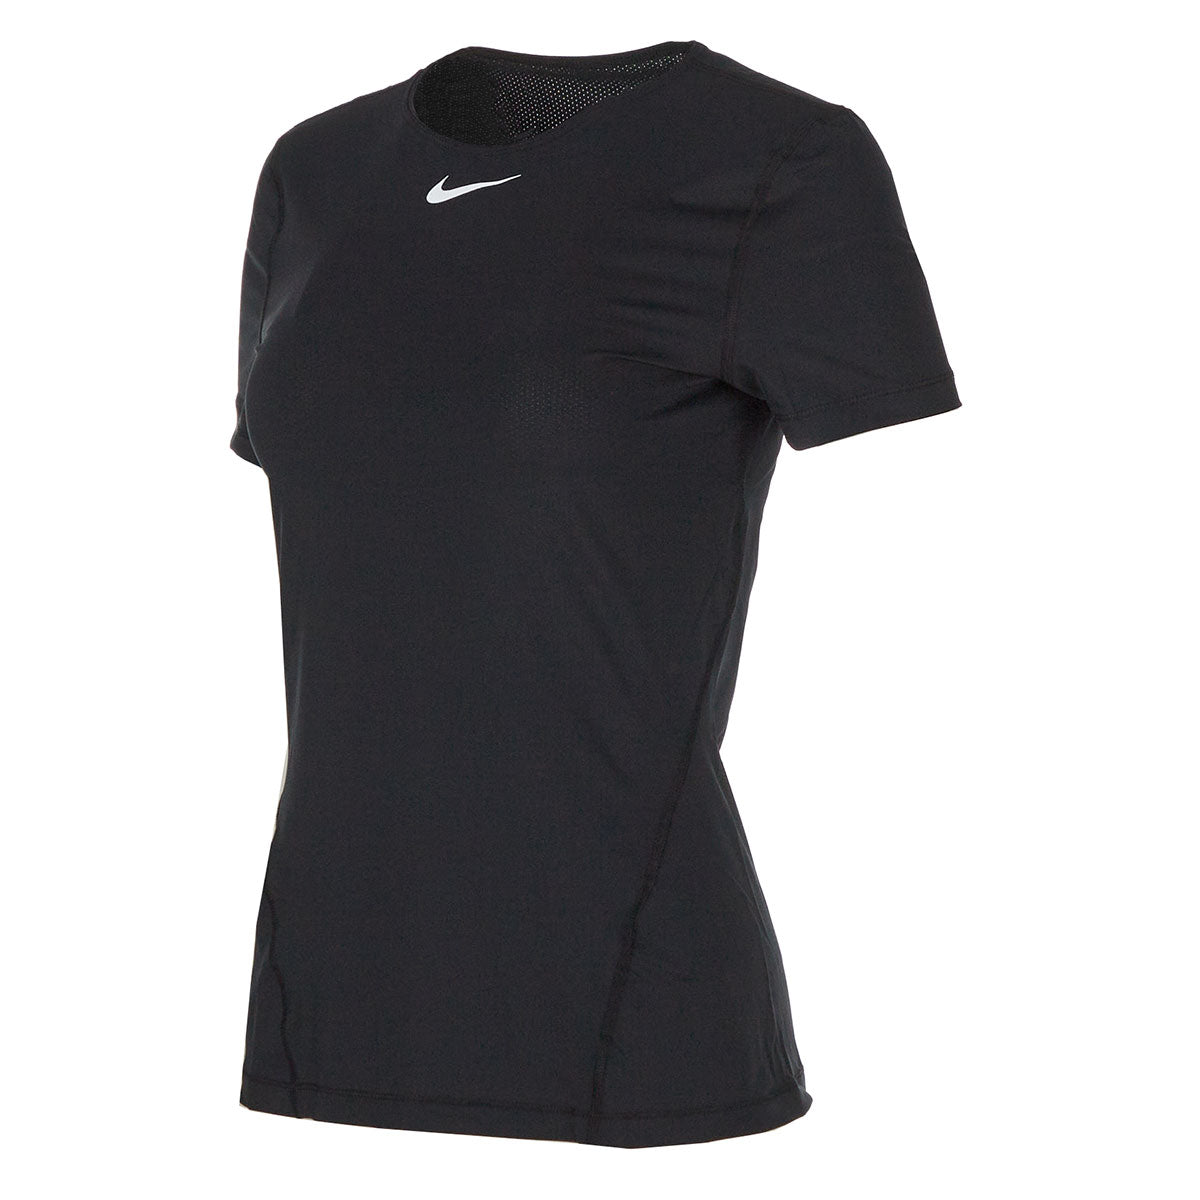 Rijp Bezwaar Geleend Nike Women's Team Pro Short Sleeve All Over Mesh Top – PROOZY